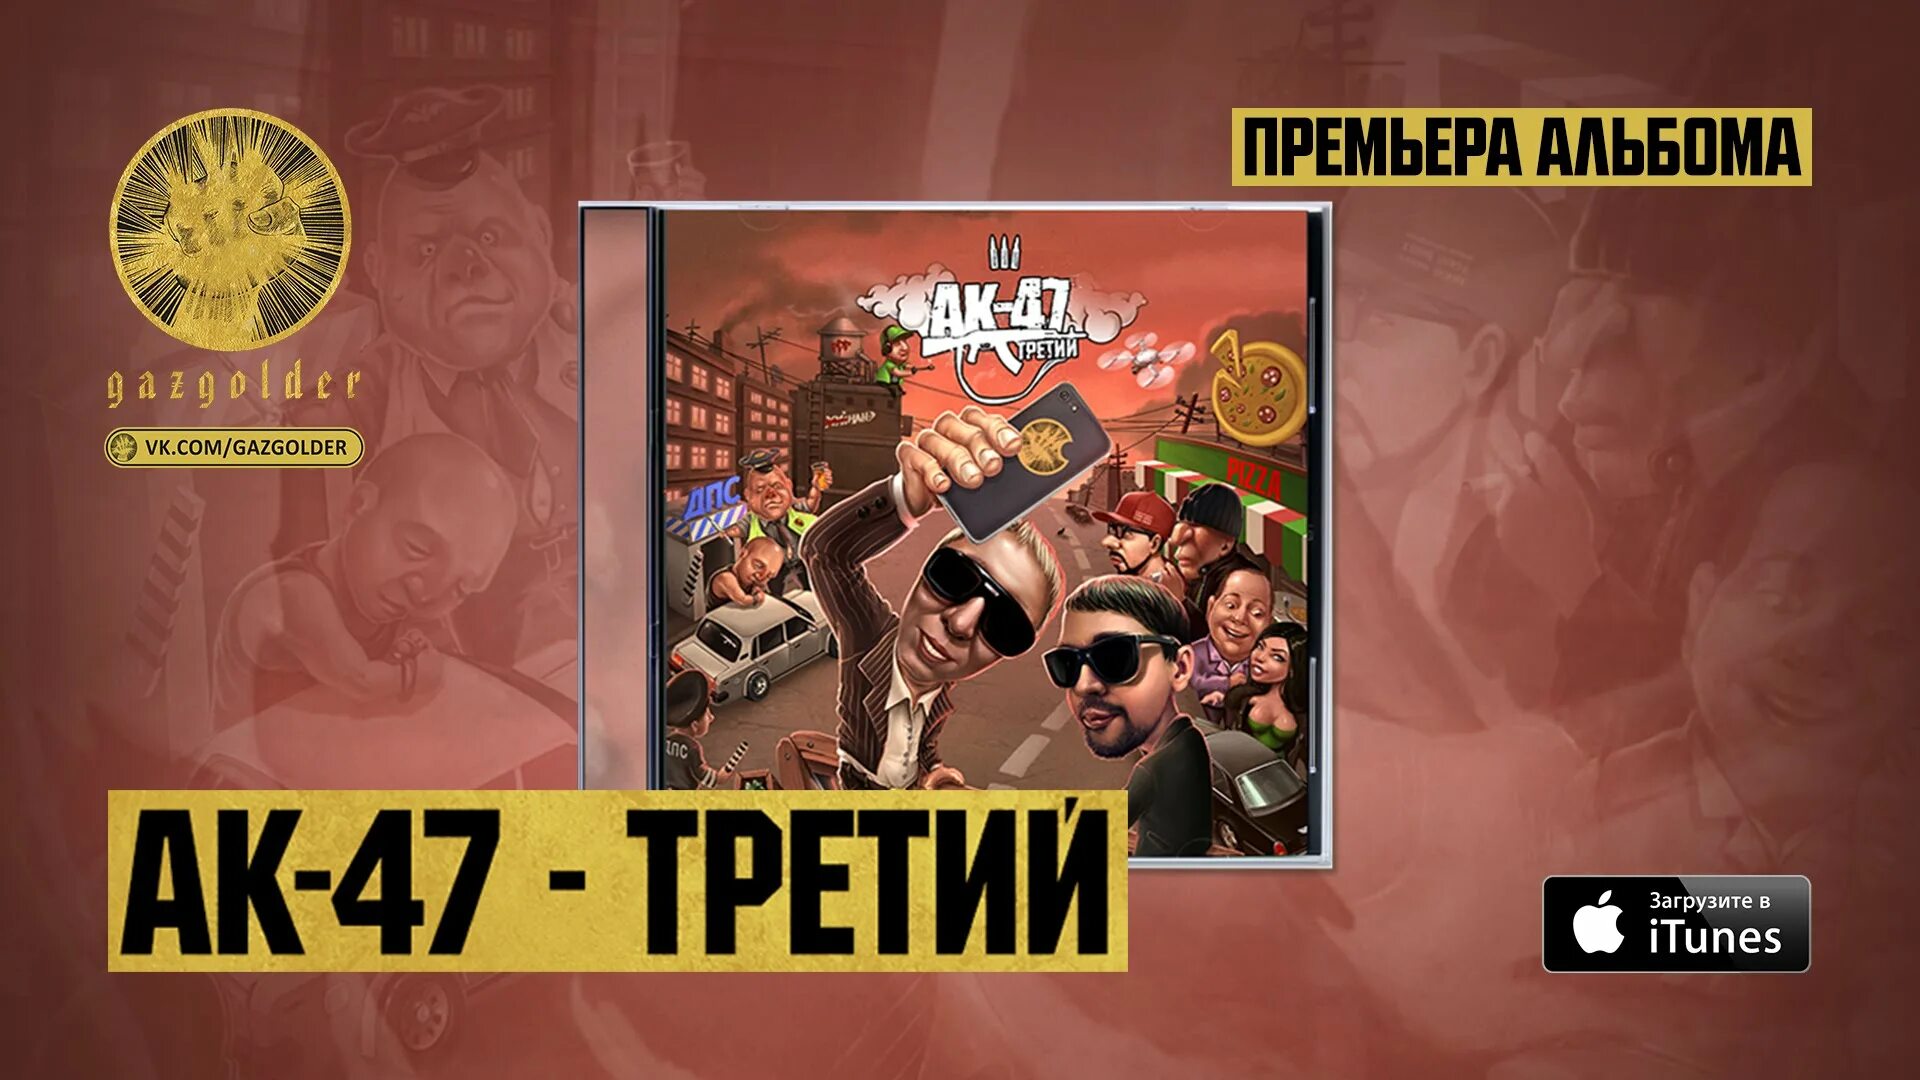 Третий АК-47. АК 47 третий альбом. АК 47 обложка. Русский Trap AK-47.